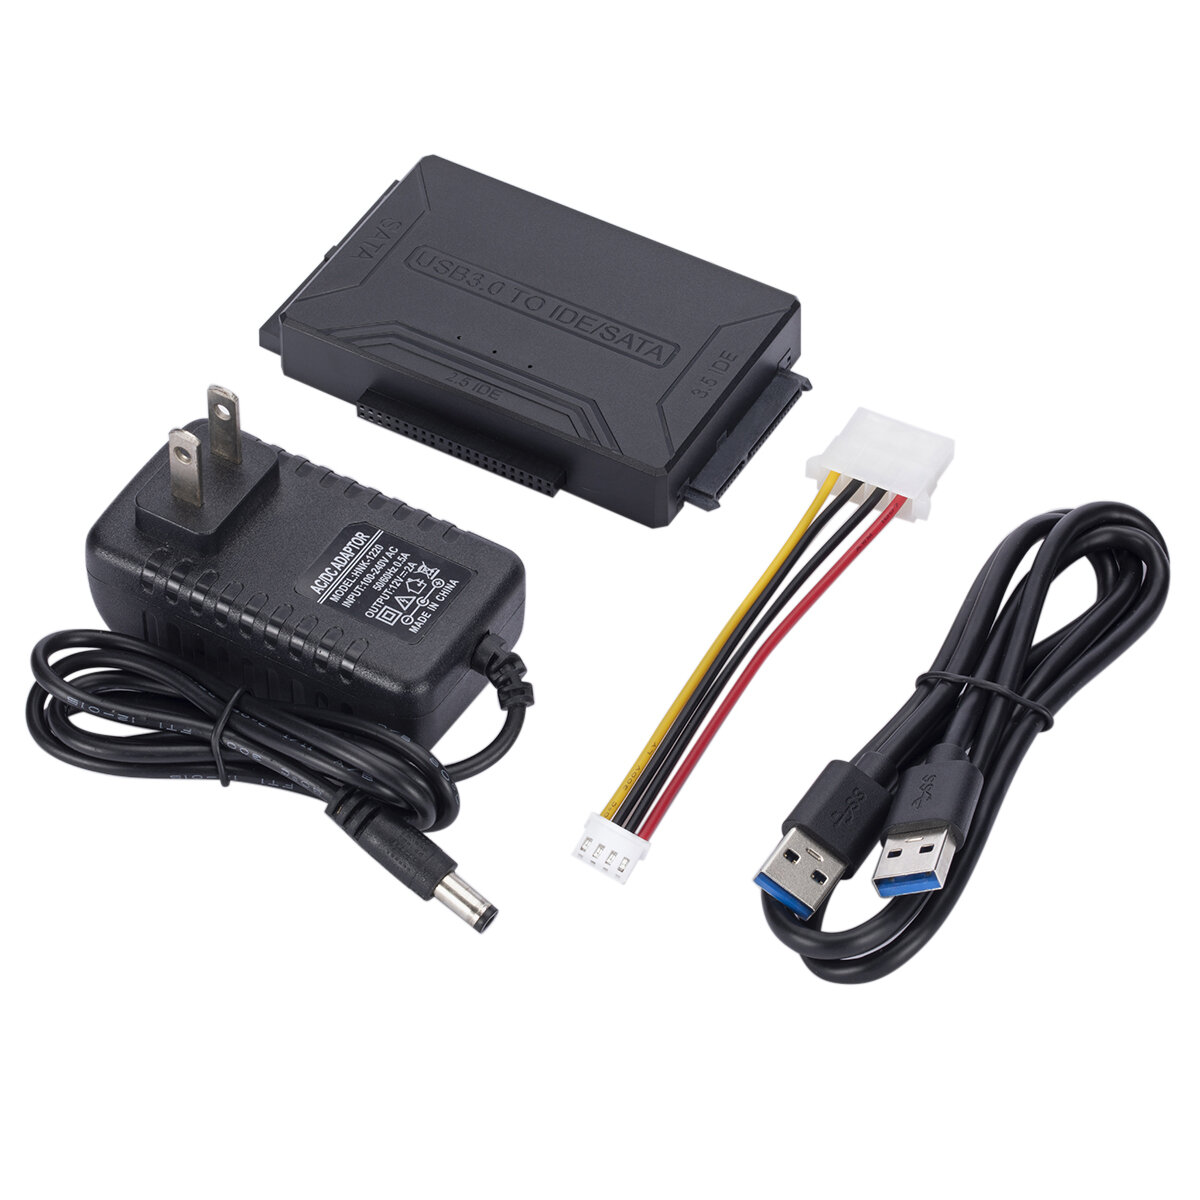 

Адаптер MnnWuu с USB 3.0 на SATA/IDE, кабель-переходник для жесткого диска для универсального 2,5/3,5 дюймов SATA и IDE